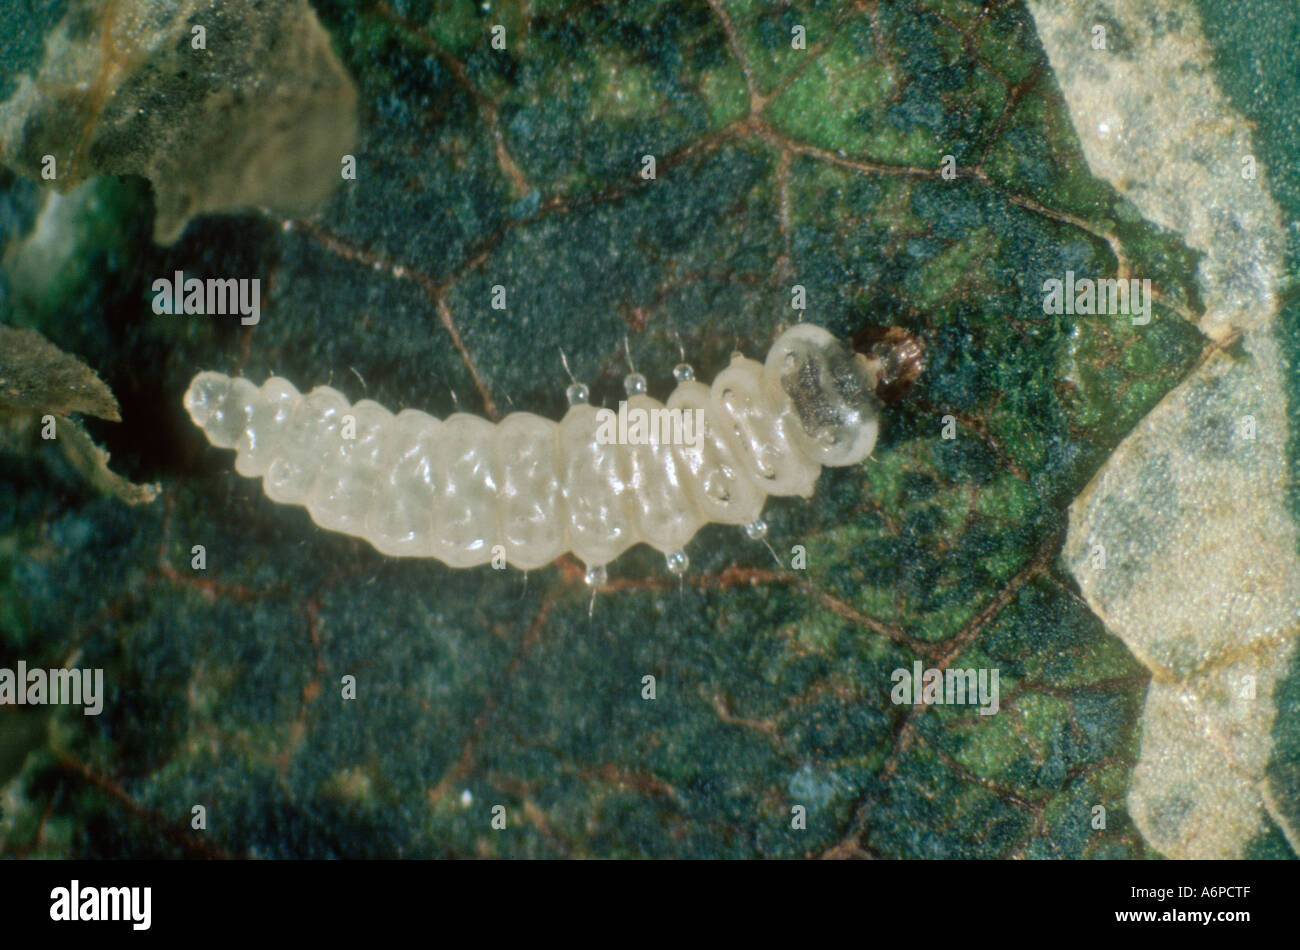 Apple leafminer (Leucoptera malifoliella) larvae exposed from feeding in an apple leaf mine Stock Photo